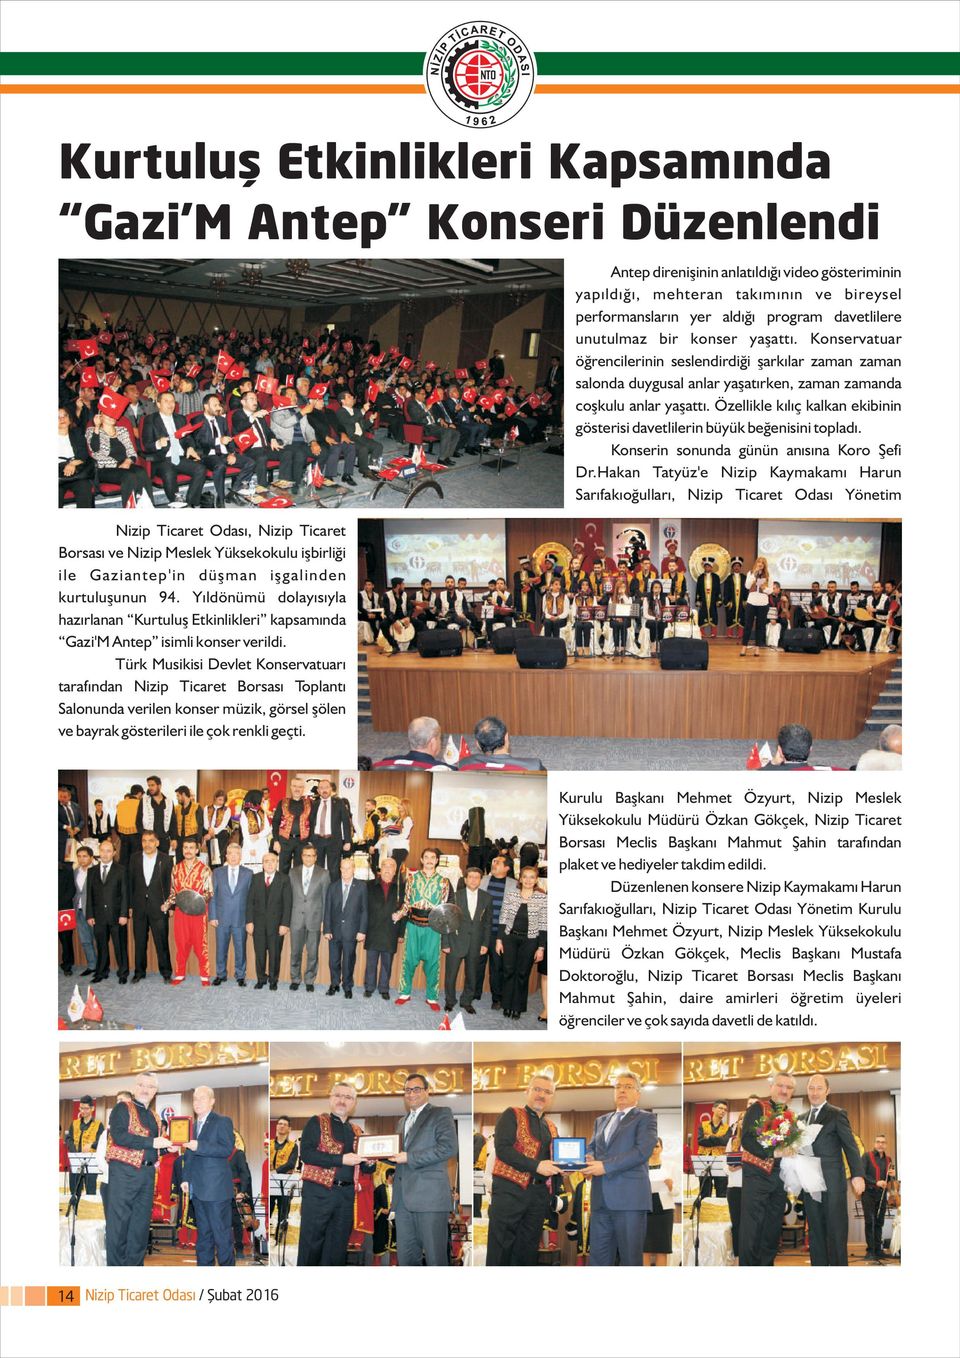 Türk Musikisi Devlet Konservatuarý tarafýndan Nizip Ticaret Borsasý Toplantý Salonunda verilen konser müzik, görsel þölen ve bayrak gösterileri ile çok renkli geçti.